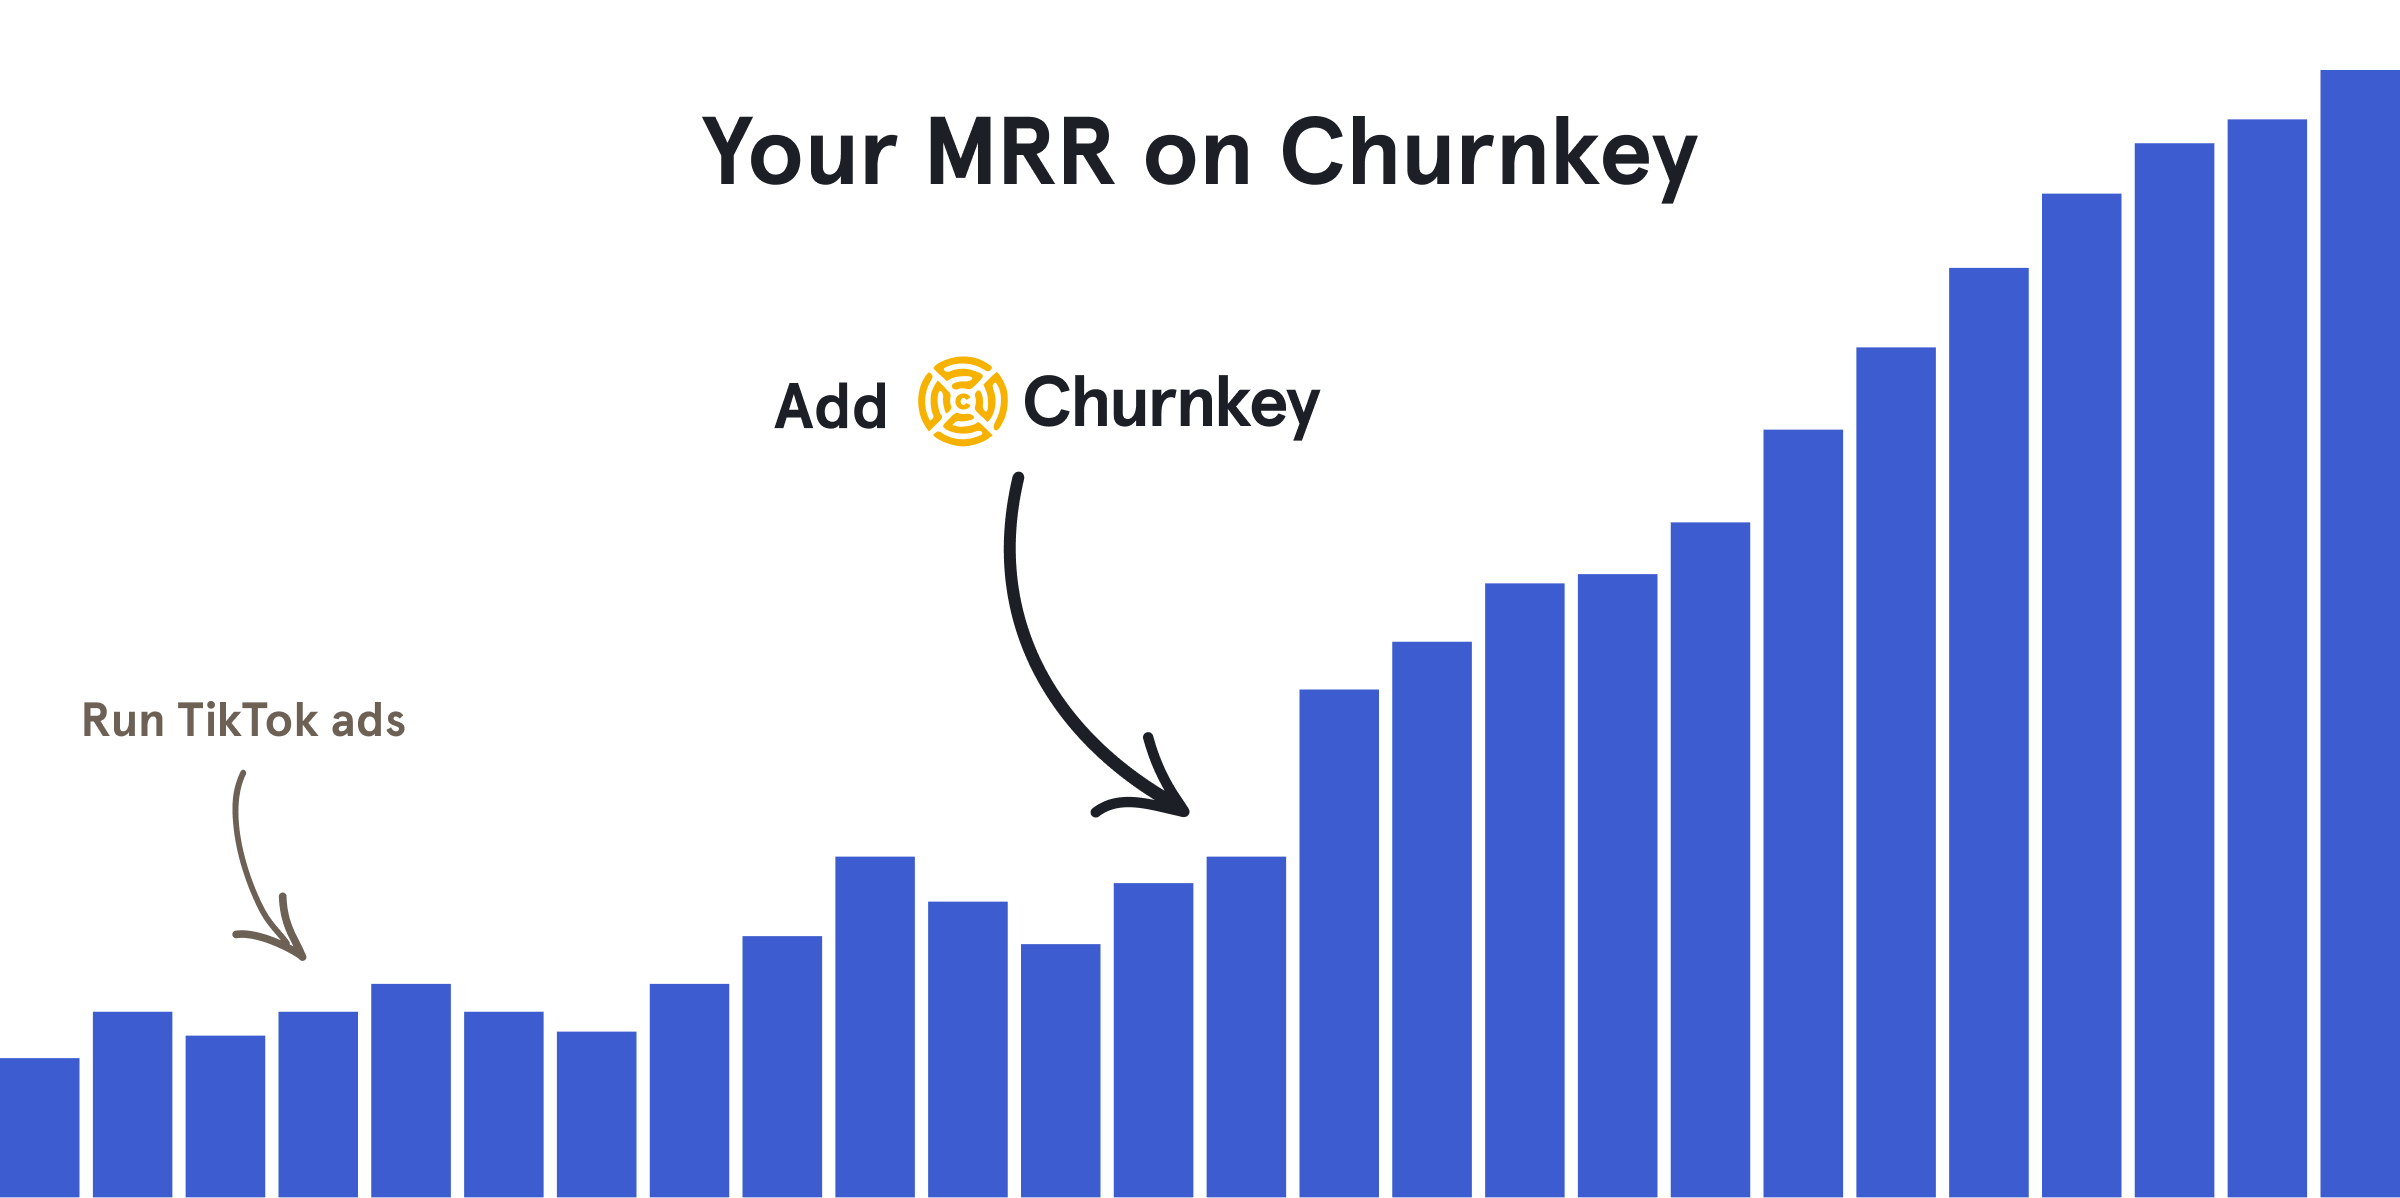 Your MRR on Churnkey